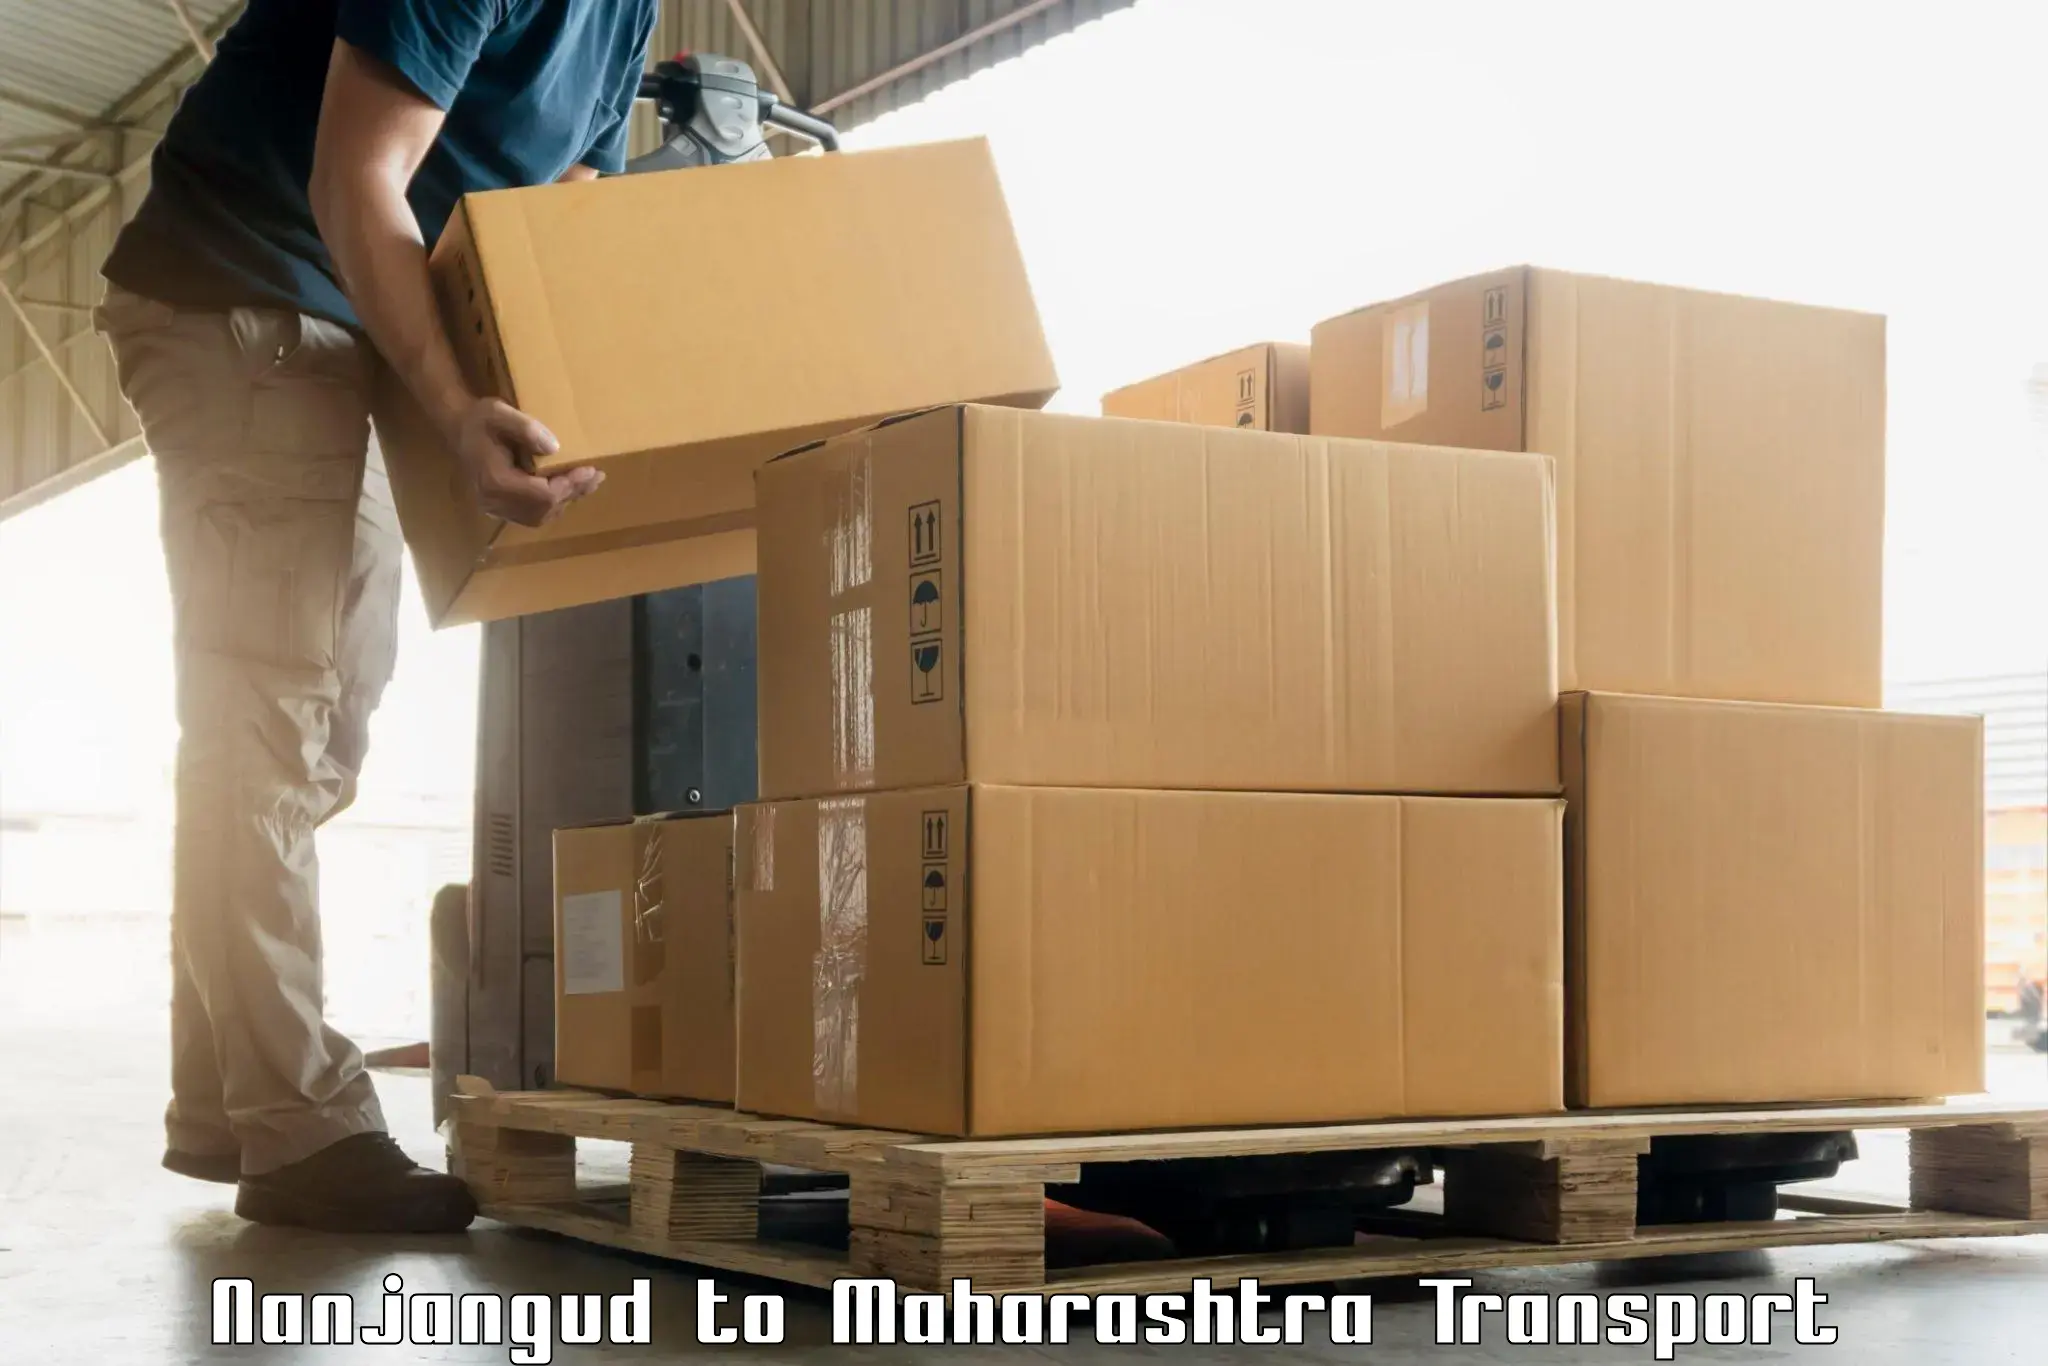 Goods transport services Nanjangud to Nanded